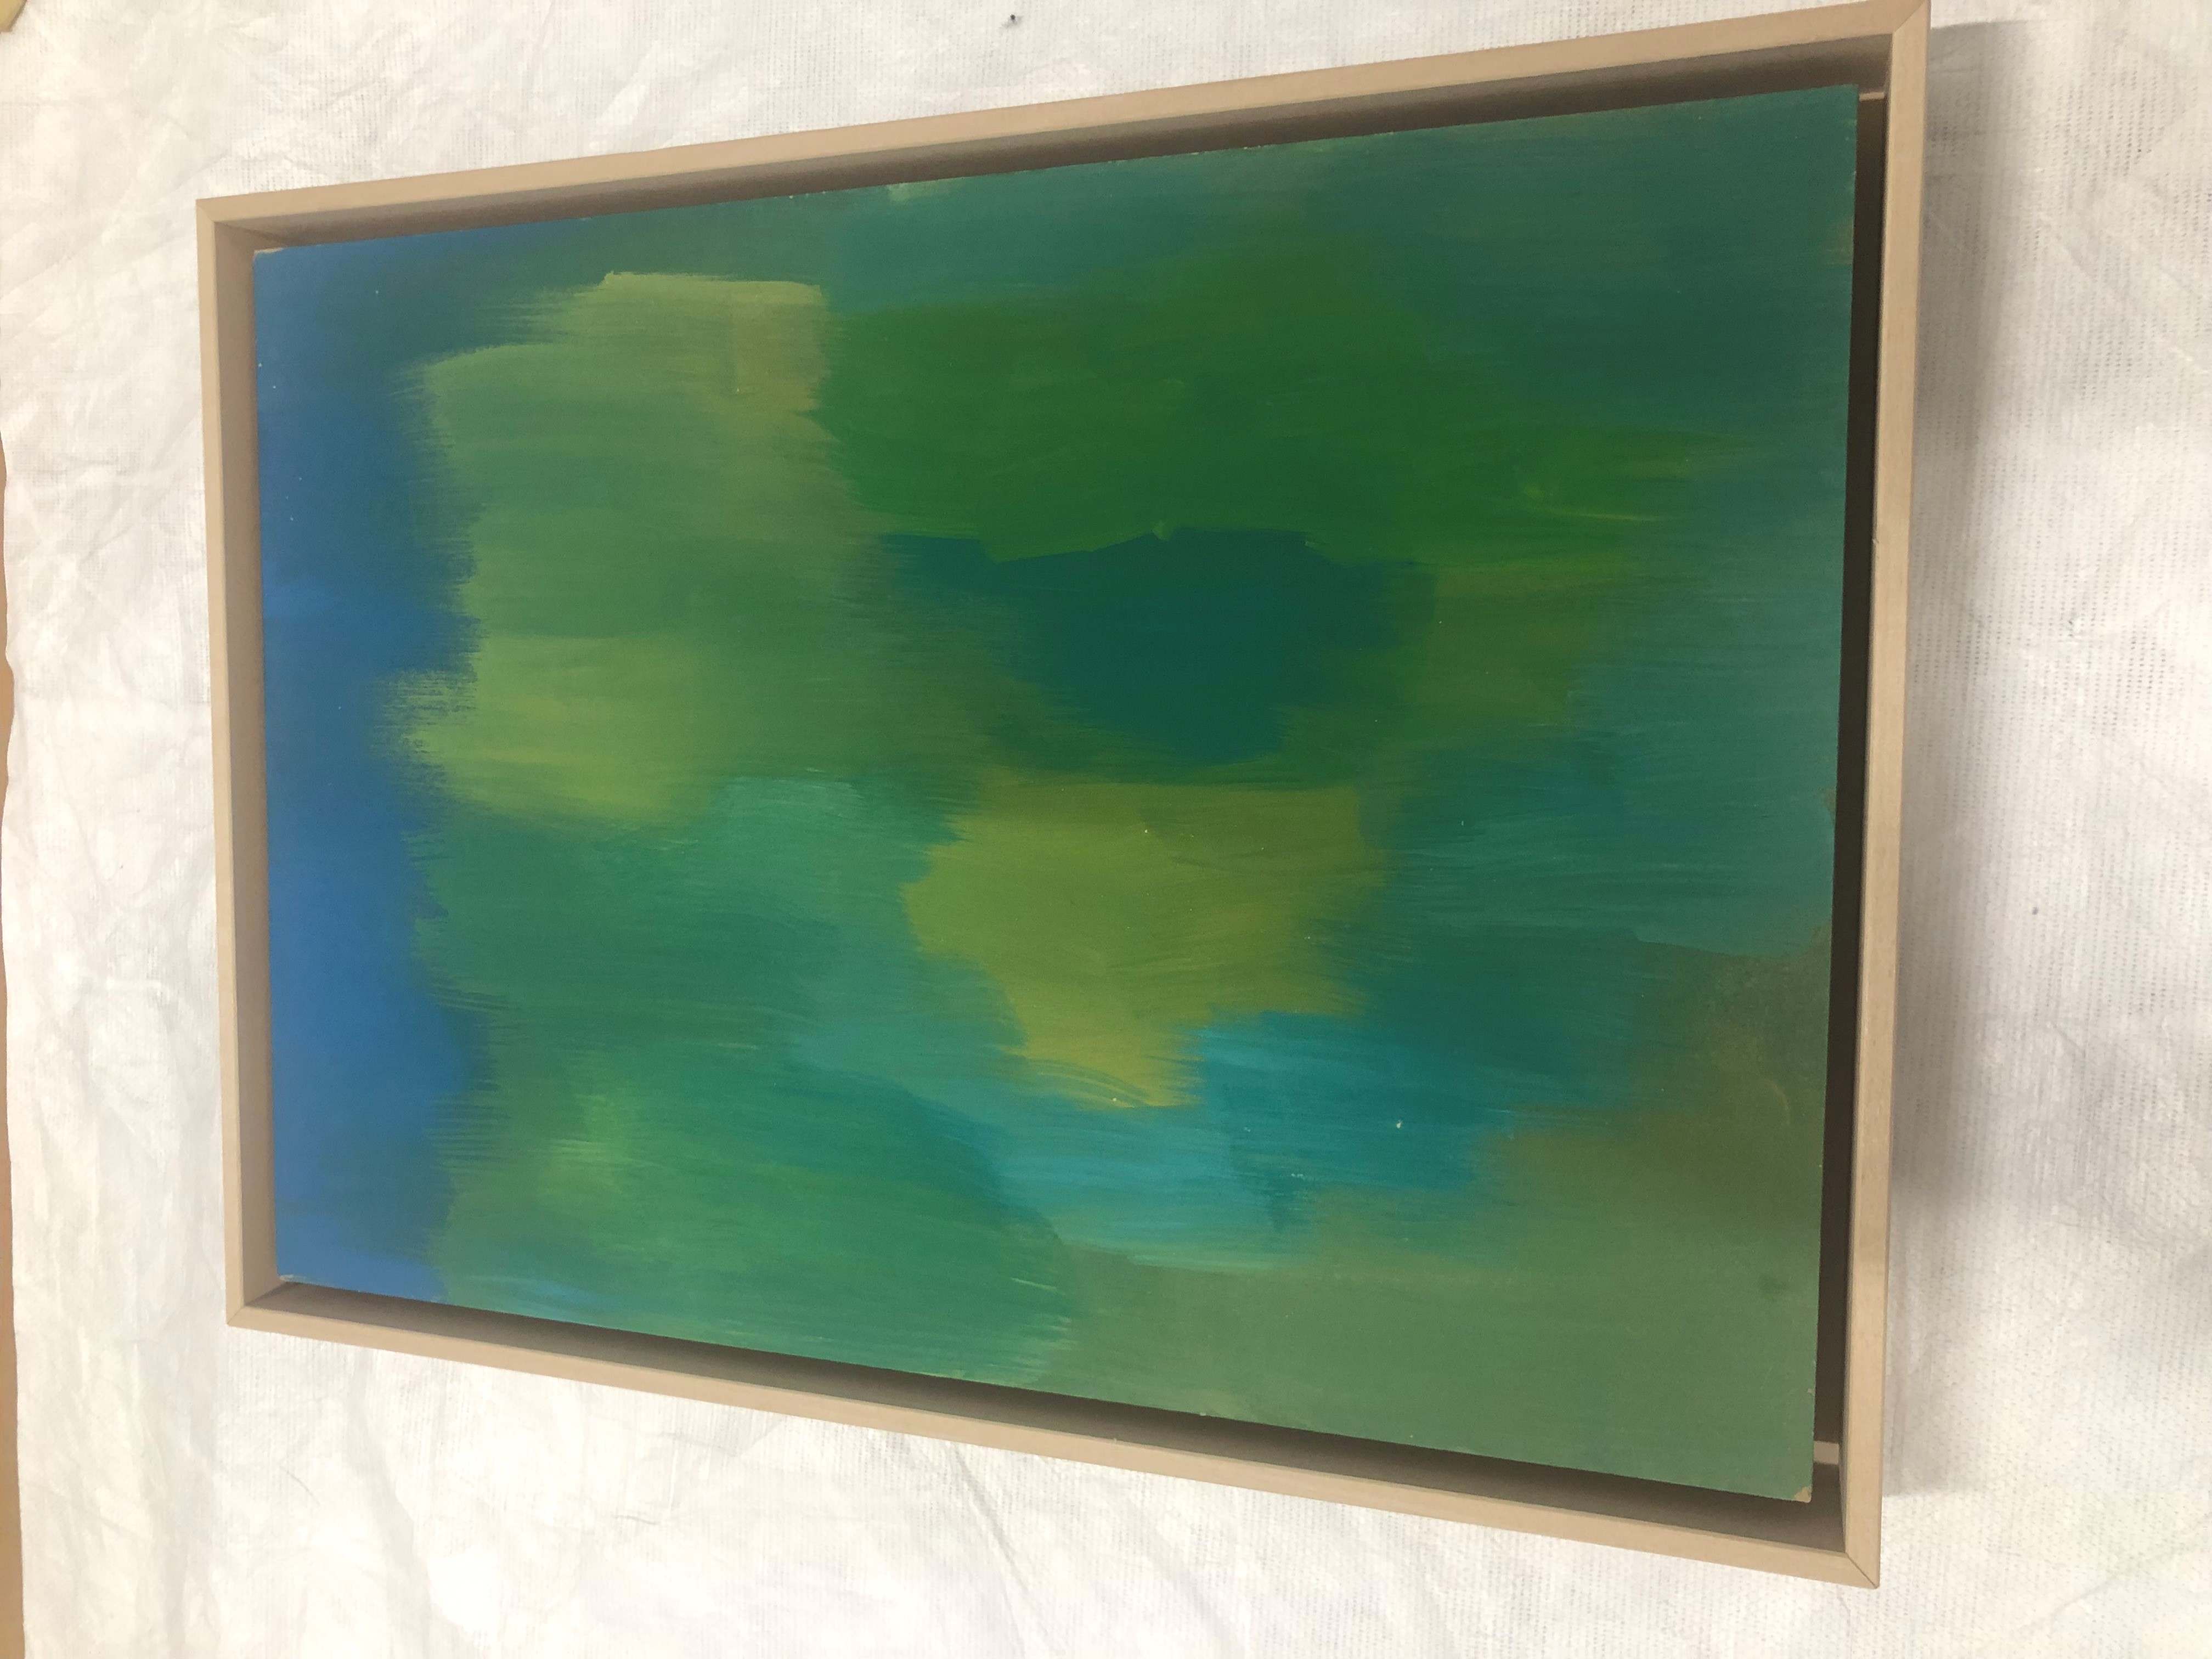 Flora Moscovici "sans titre" 2018 peinture sur bois 36,2 x 26,3 cm